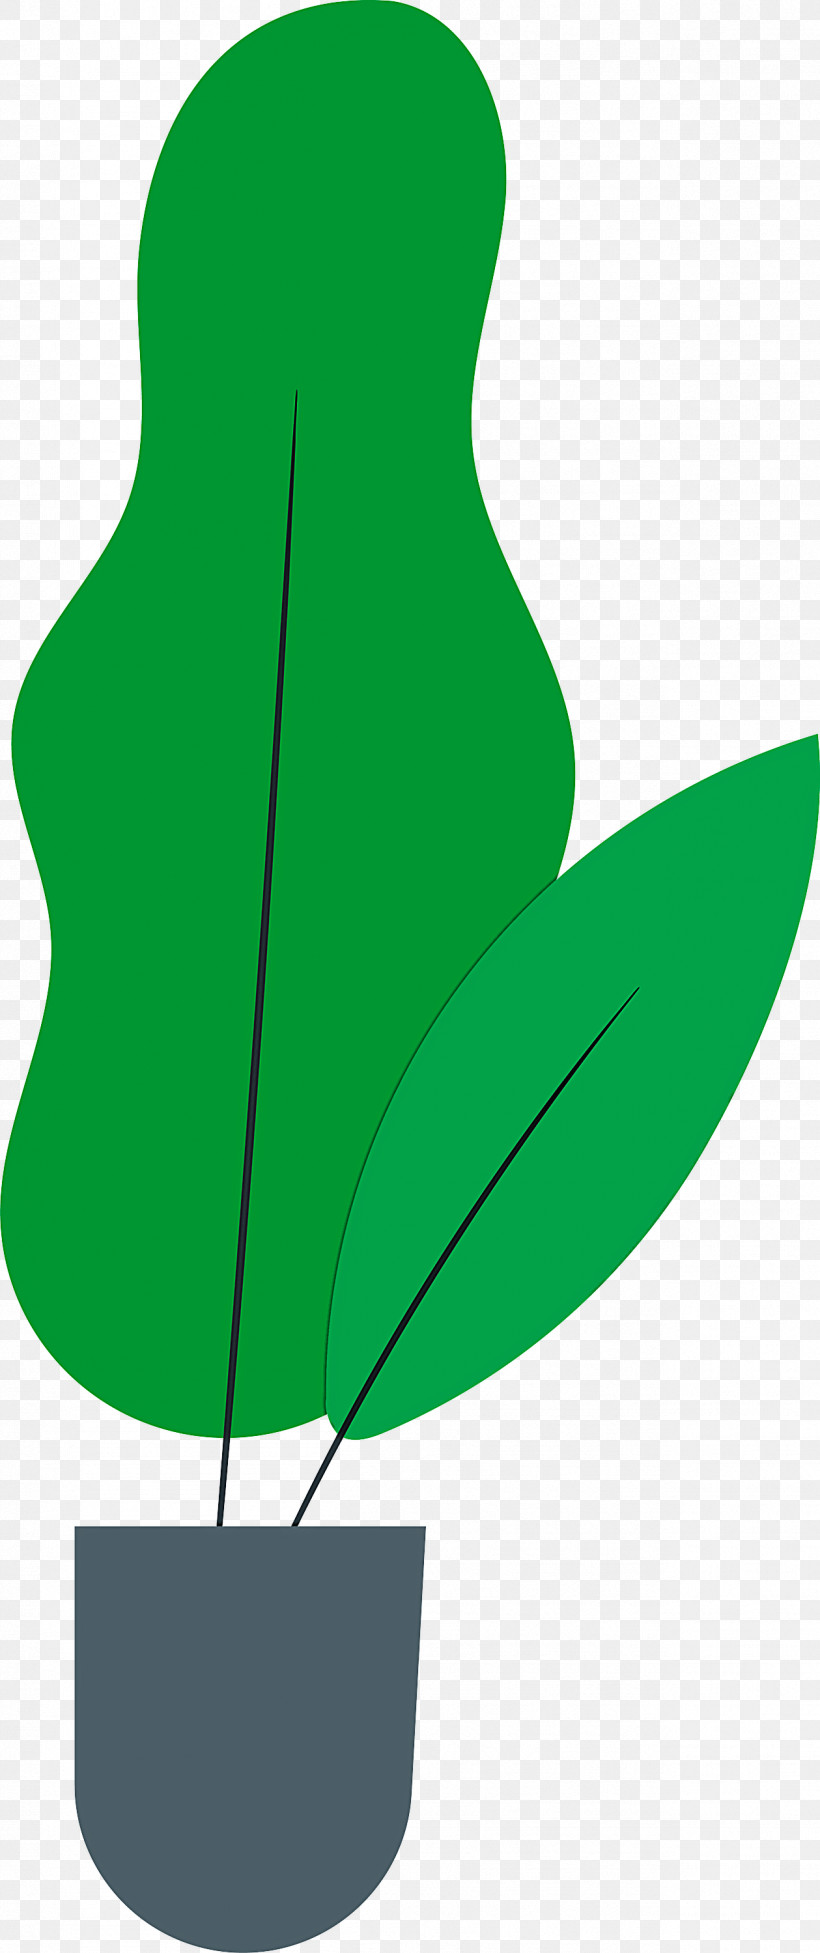 Leaf Plant Stem Flower Branch Petal, PNG, 1259x2999px, Leaf, Biology, Branch, Fig Trees, Flower Download Free